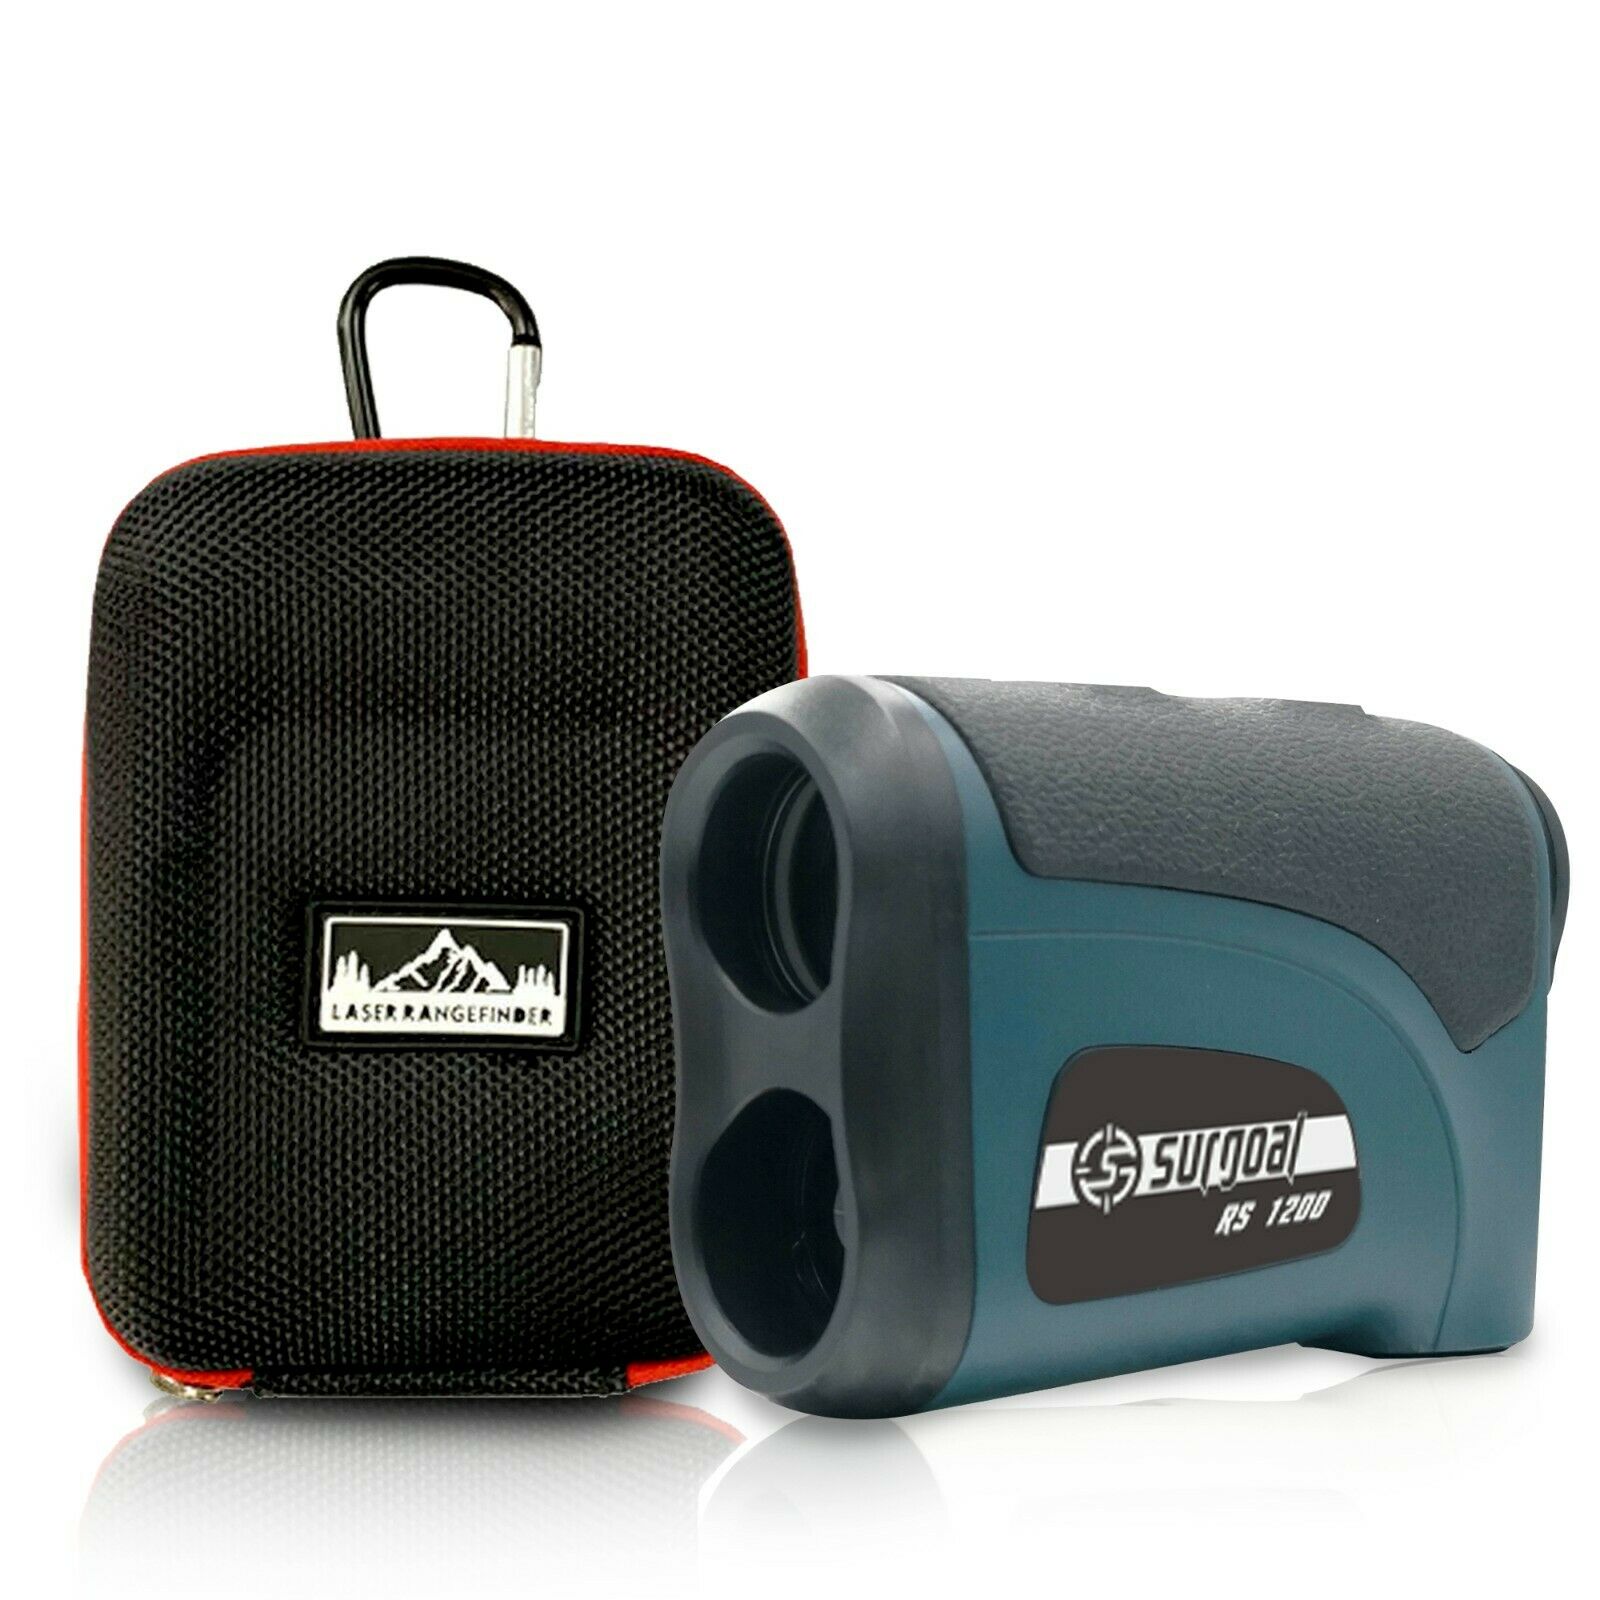 Surgoal Hd1200yd/1097meter Golf&hunting Laser Rangefinder Waterproof_all-purpose